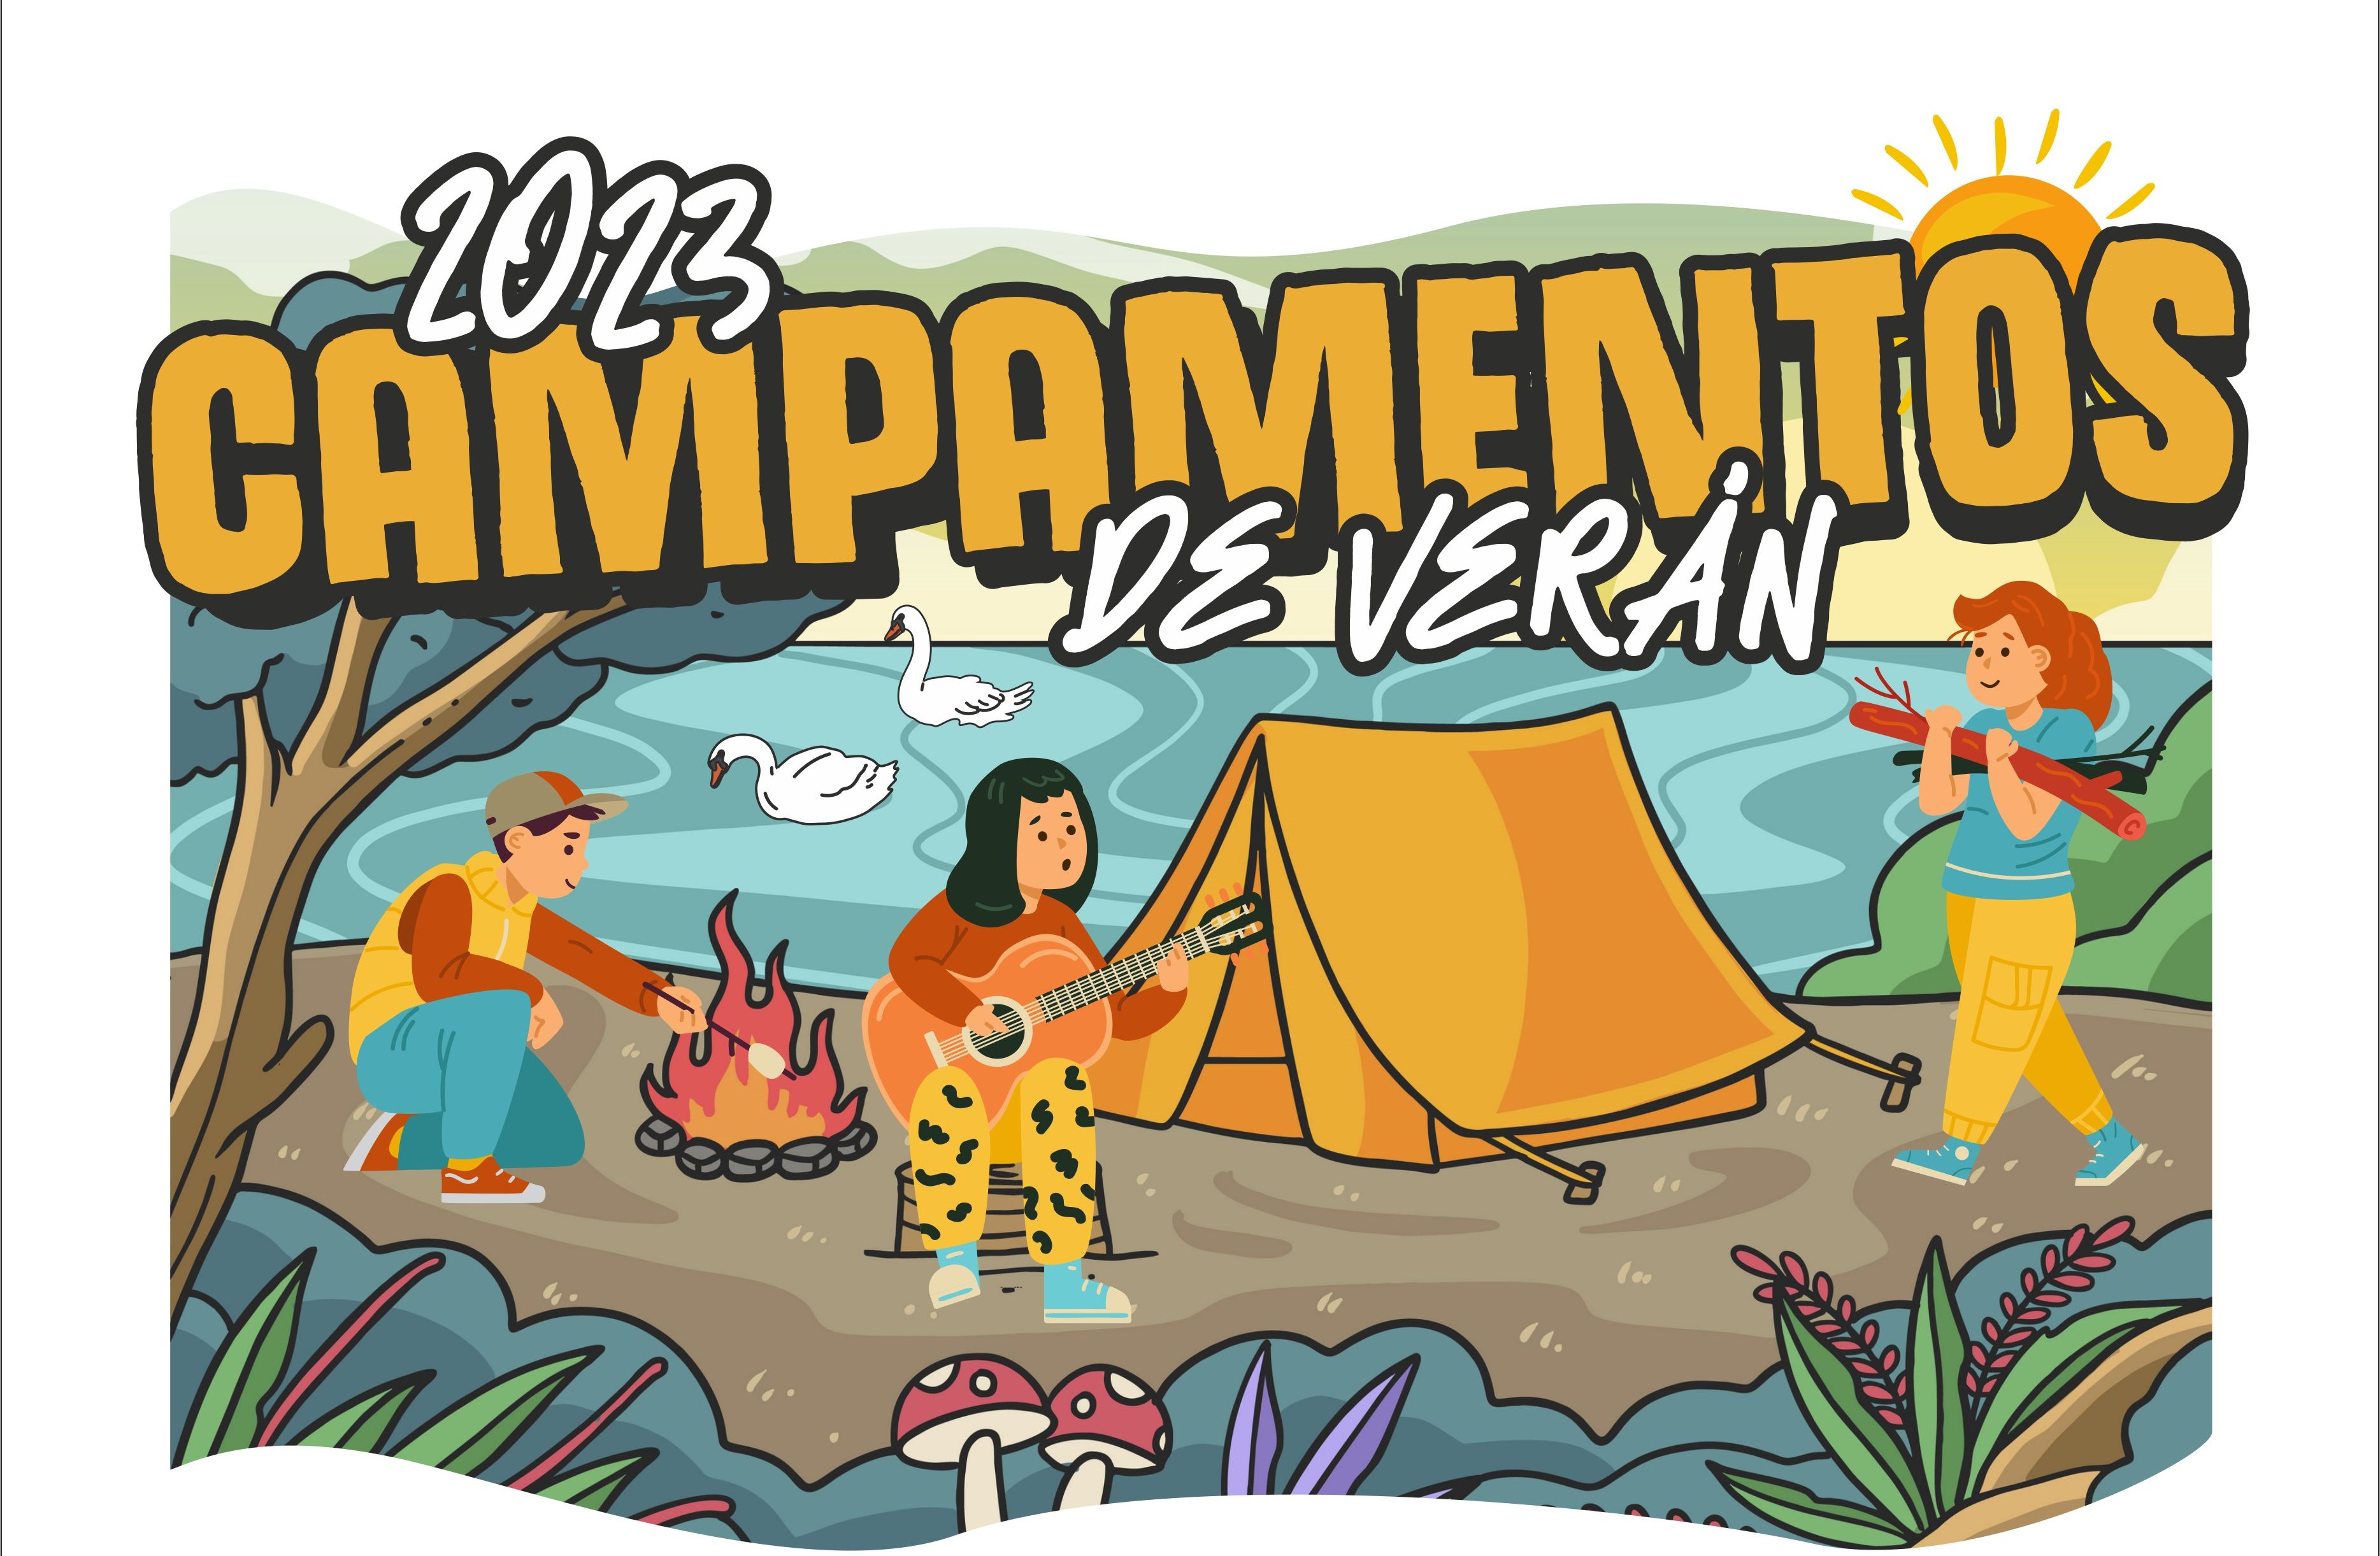 Cartaz dos campamentos de verán 2023